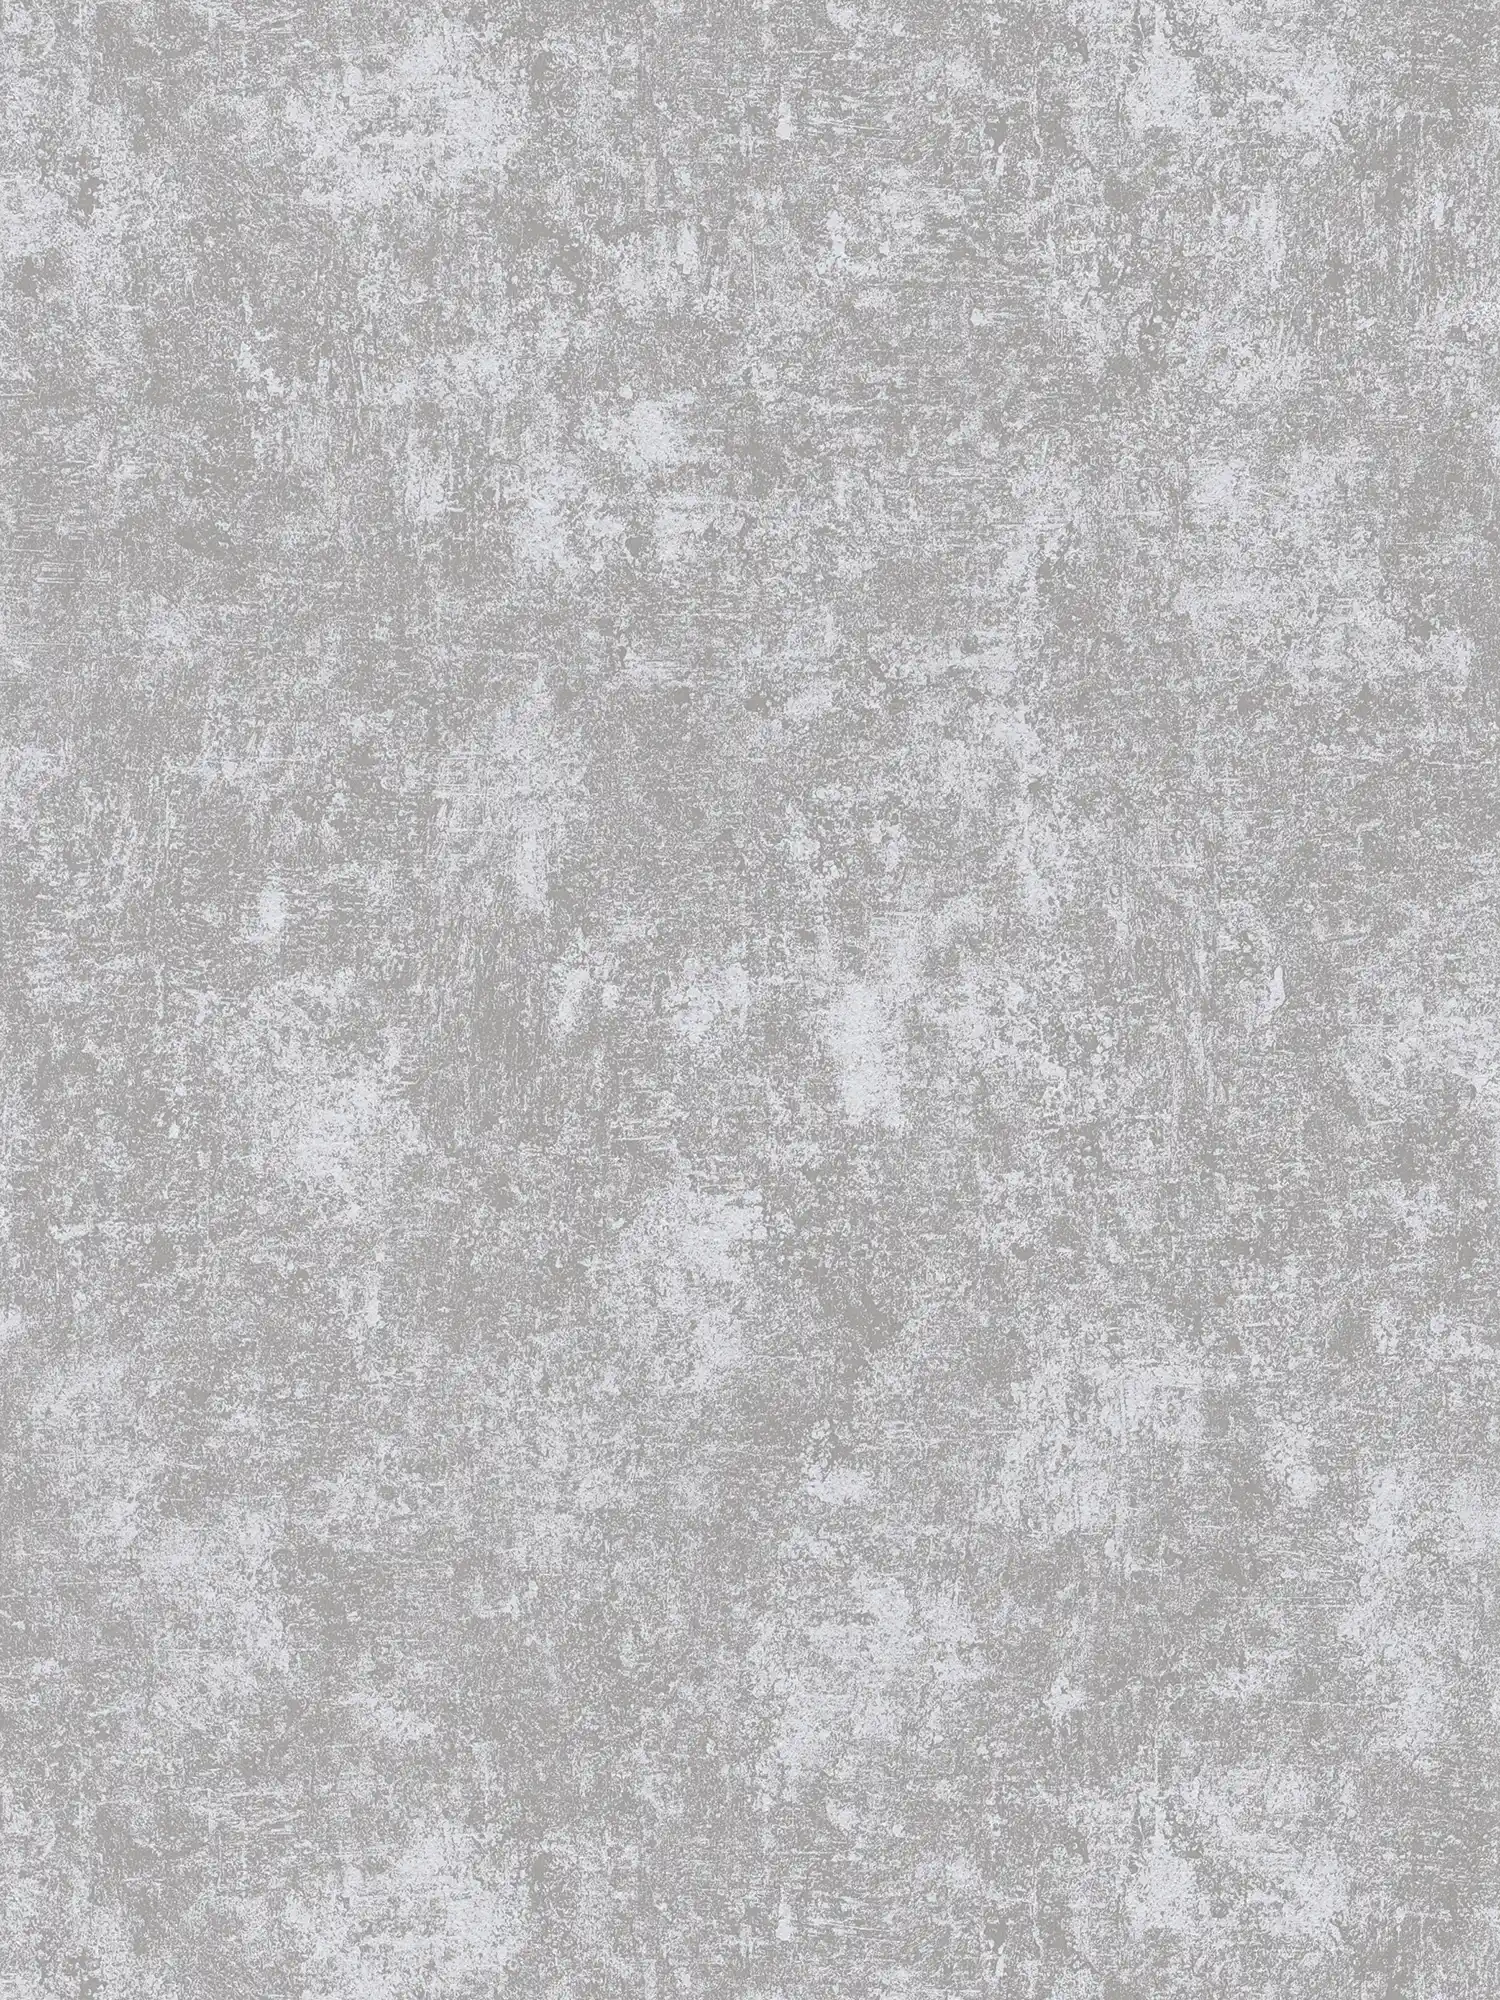 Tapete mit Metallic- und Glanzeffekt glatt – Silber, Grau, Metallic
